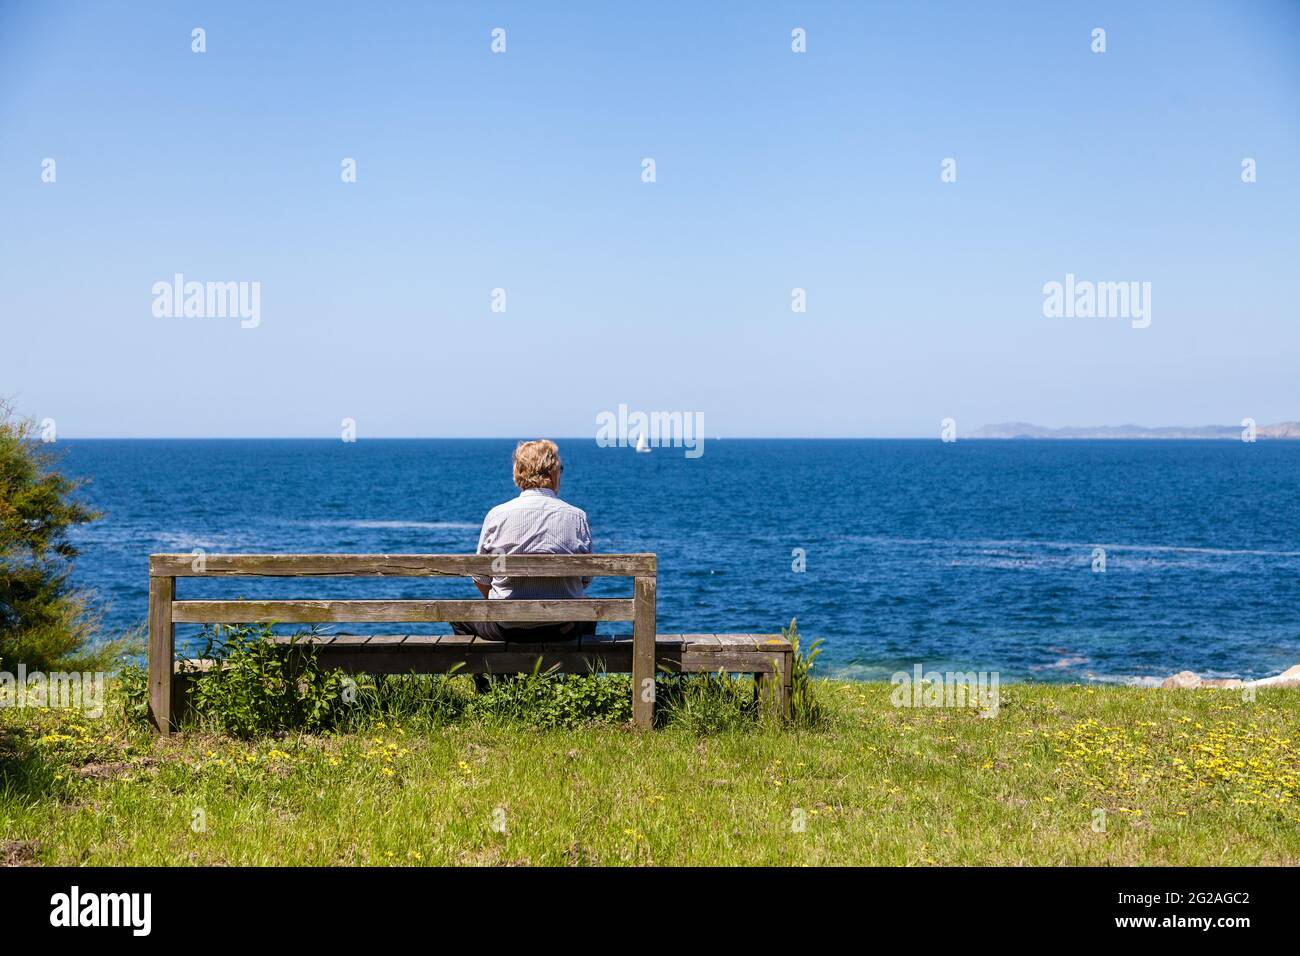 Un homme, assis au bord de l'océan, seul, face à l'extérieur de la caméra, appréciant, contemplant la vue Banque D'Images